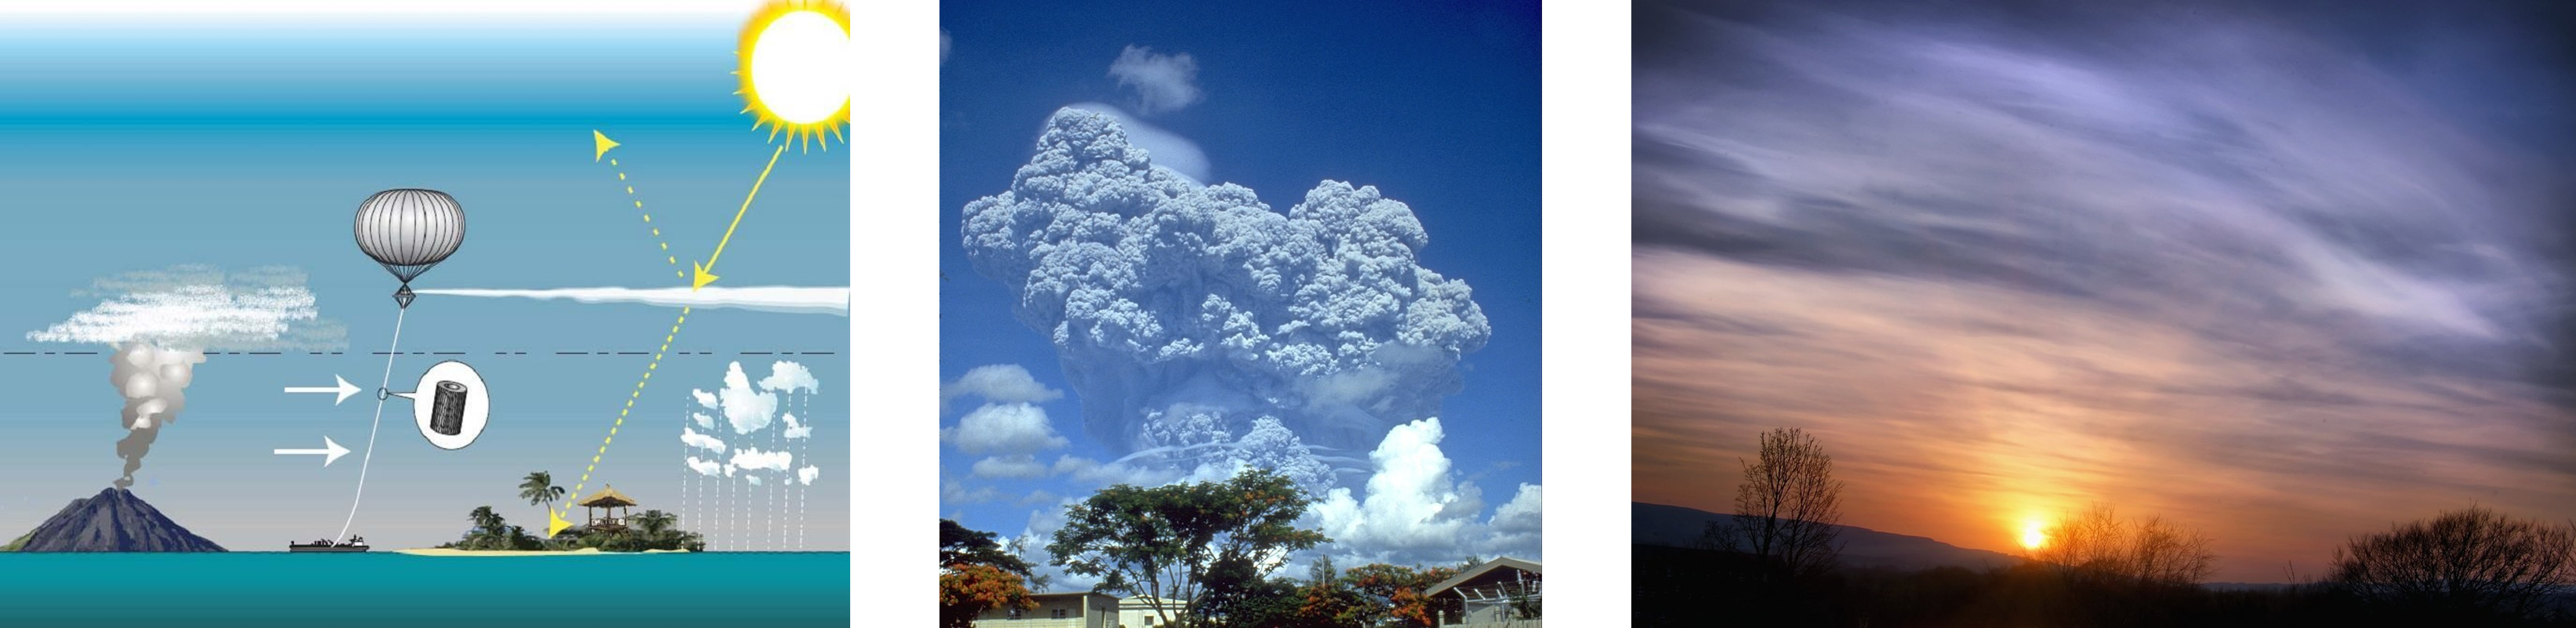 (왼쪽) 태양복사관리 기법의 개요. 출처: Wikimedia Commons/Hughhunt, SPICE_SRM_overview.jpg, CC BY-SA 3.0 (가운데) 1991년의 피나투보 화산의 대폭발 장면입니다. 이 폭발의 영향으로 1991~1993년의 지구 평균 온도는 약 0.5°C 감소했습니다. 출처: USGS, Public Domain (오른쪽) 2010년 아이슬란드 화산 폭발 당시의 사진으로, 화산재 입자가 하늘을 가득 메워서 뿌옇게 된 것을 볼 수 있습니다. 출처: Tom Blackwell, https://www.flickr.com/photos/tjblackwell/4526300789/, CC BY-NC 2.0